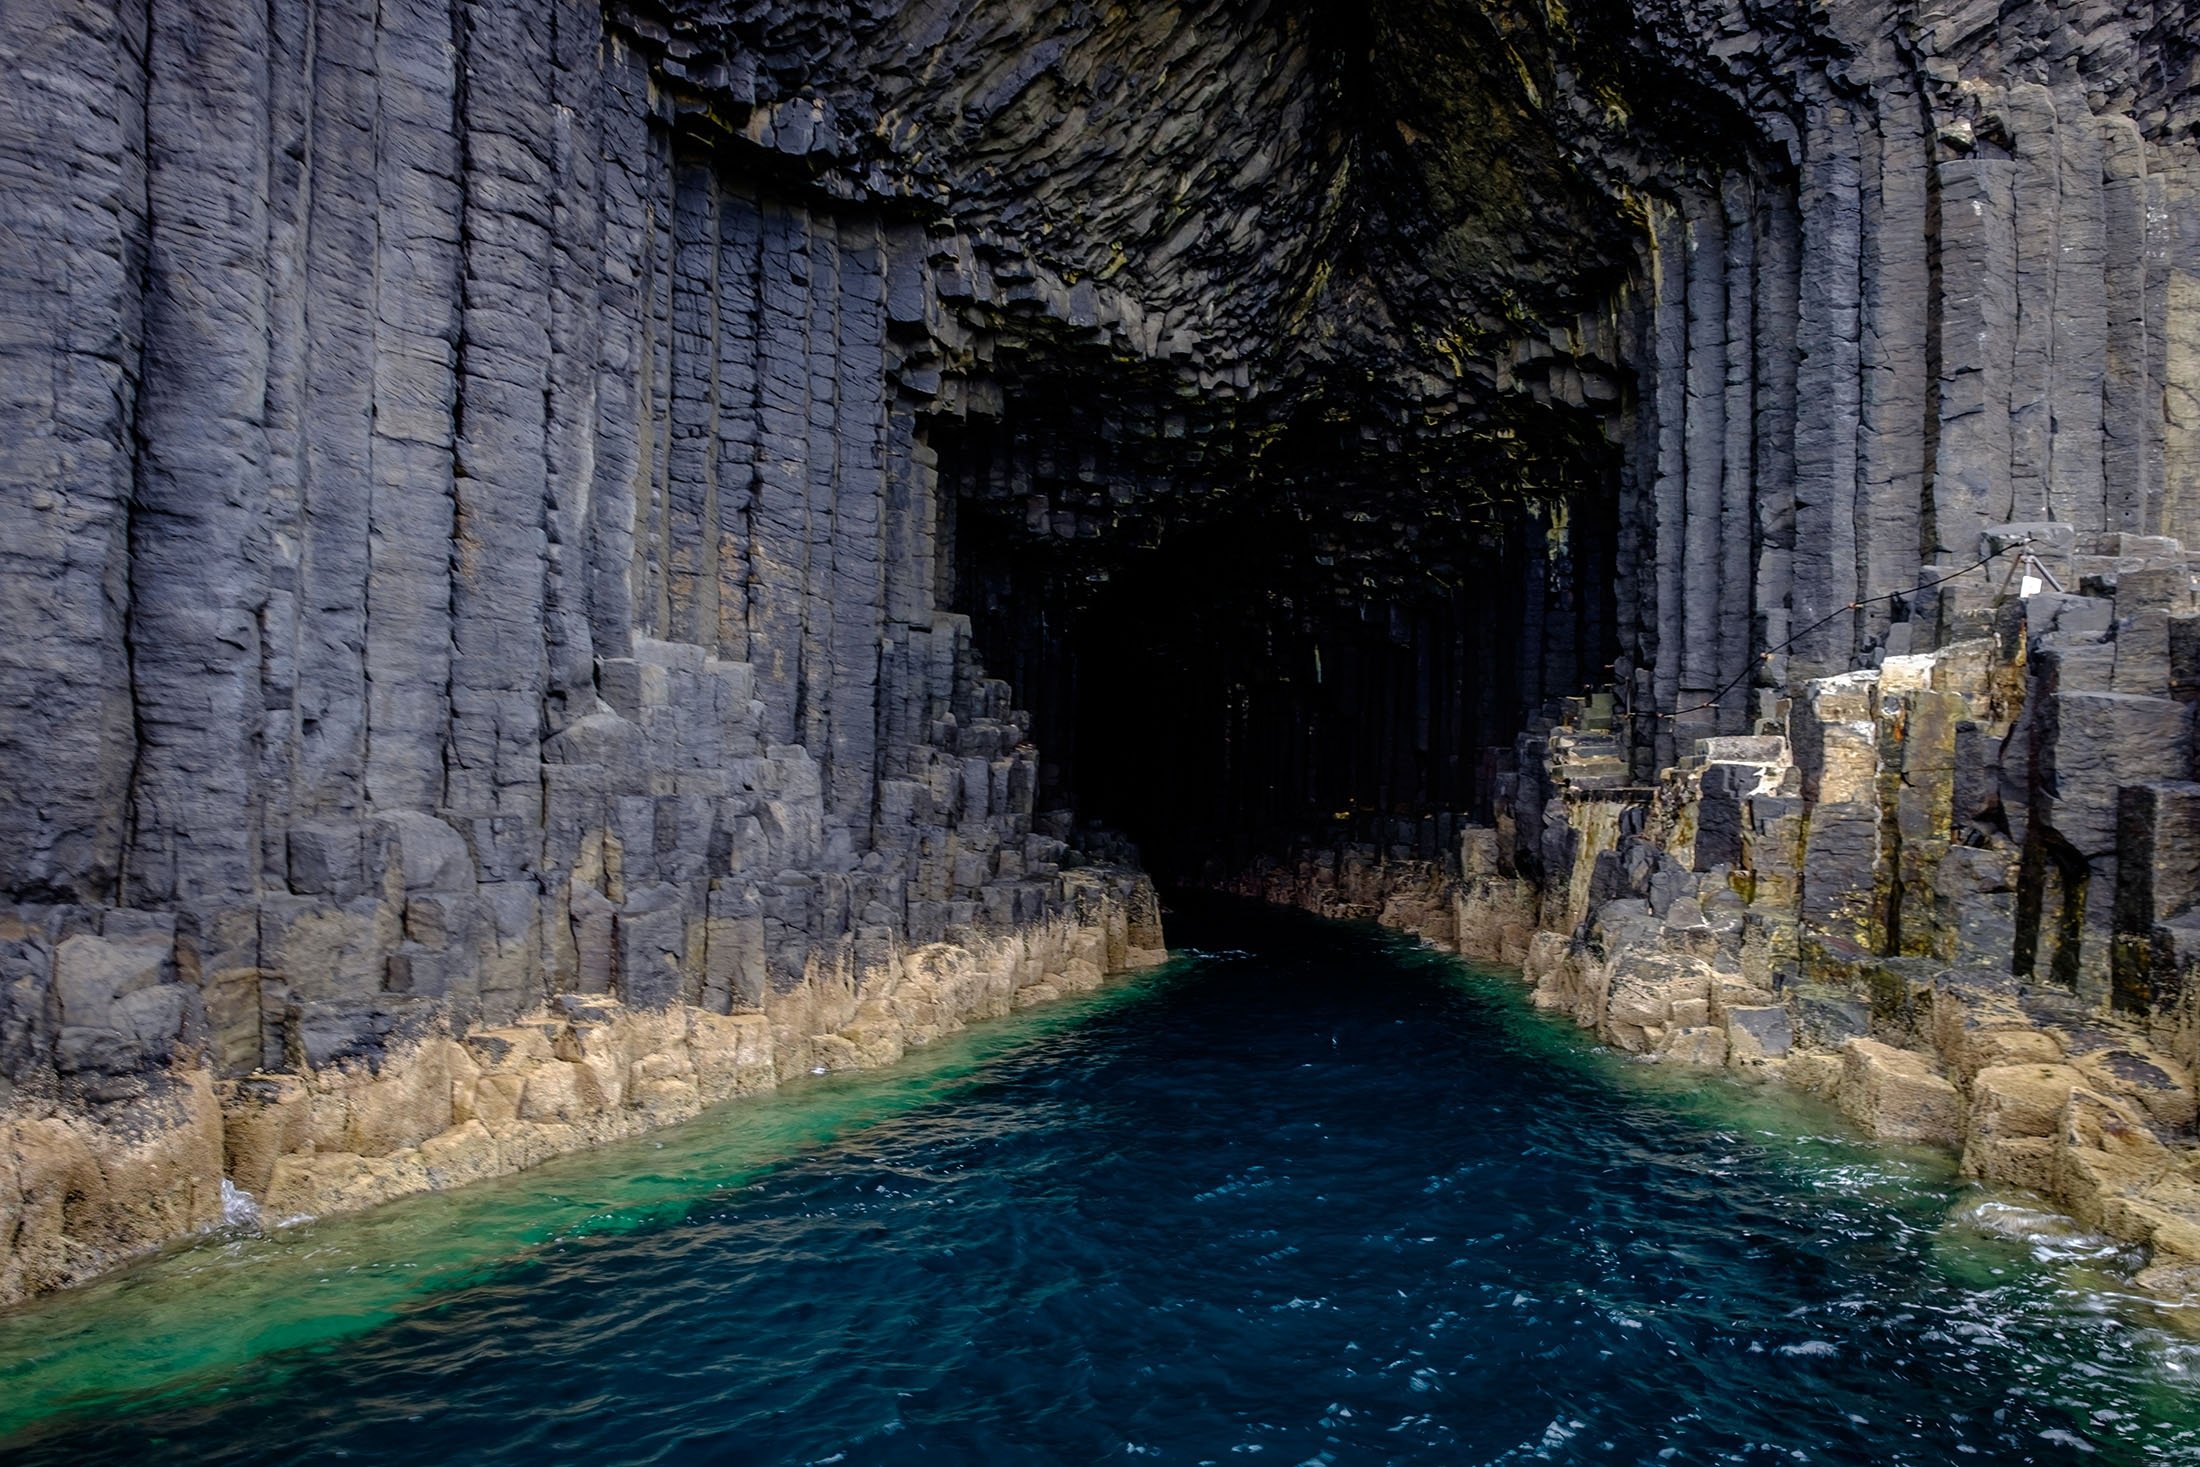 Gua Fingal di Skotlandia memiliki pintu masuk melengkung yang lebar dan dipenuhi air laut.  (Foto Shutterstock)